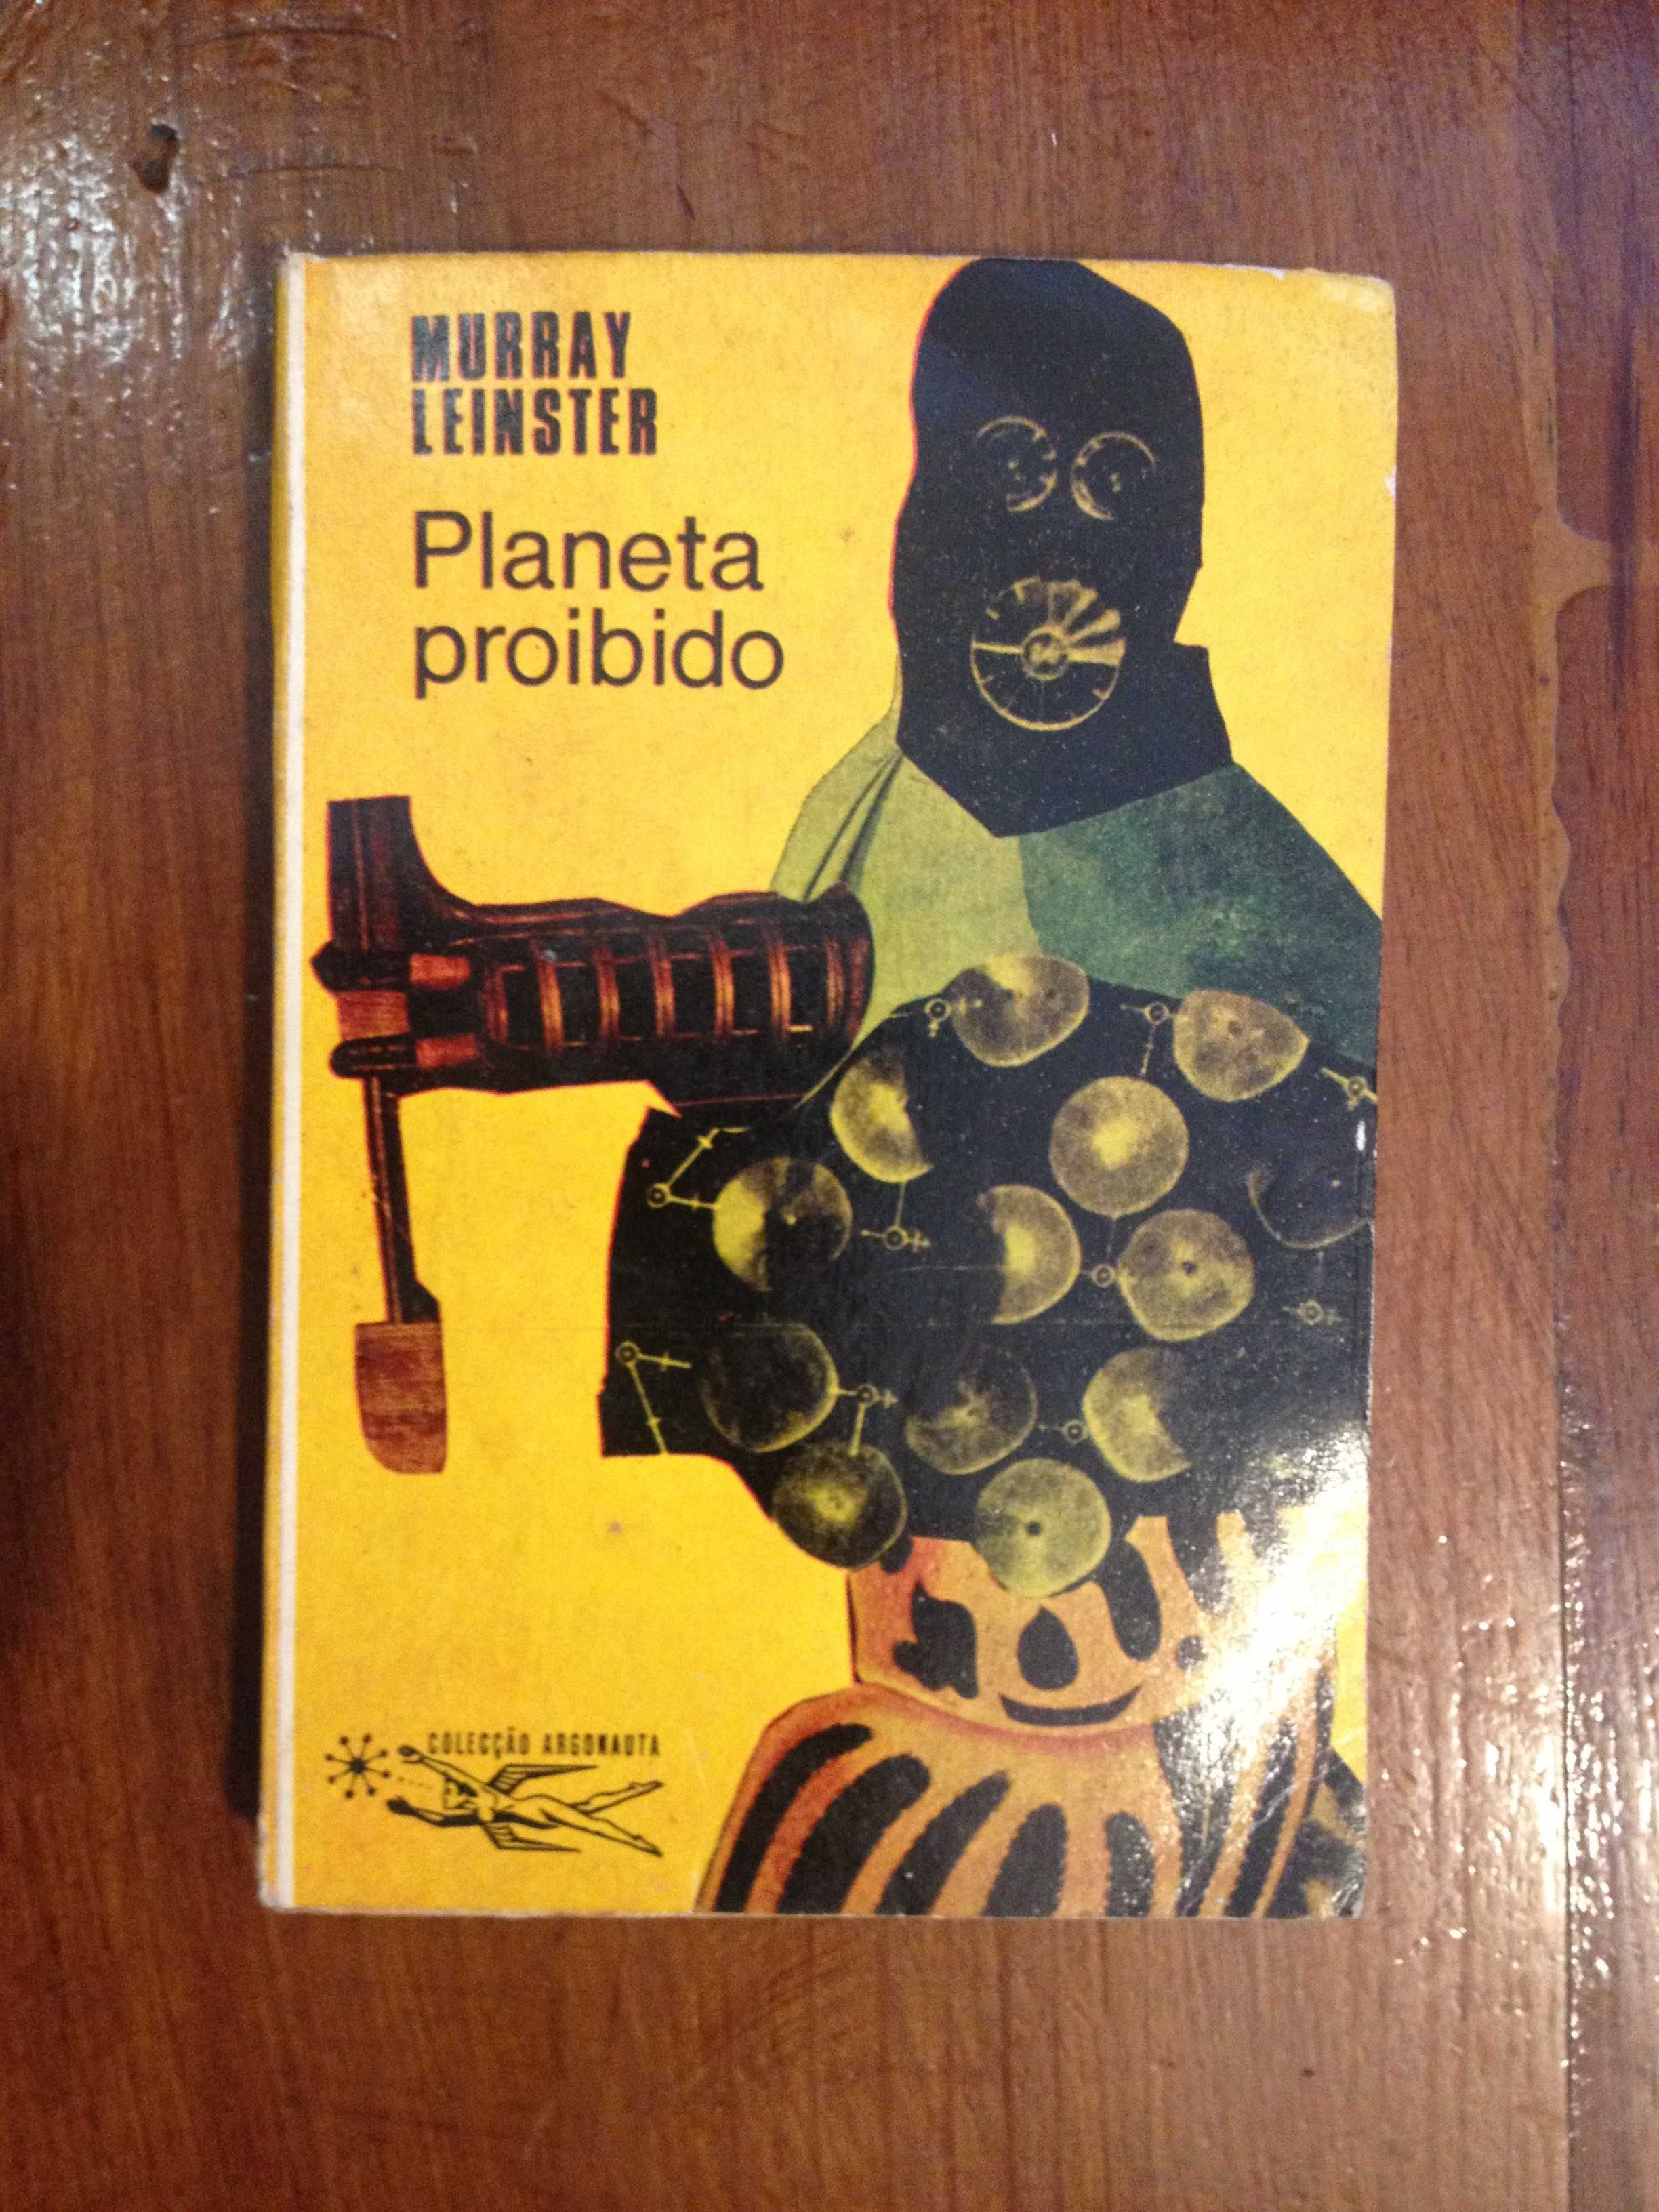 Murray Leinster - Planeta proibido